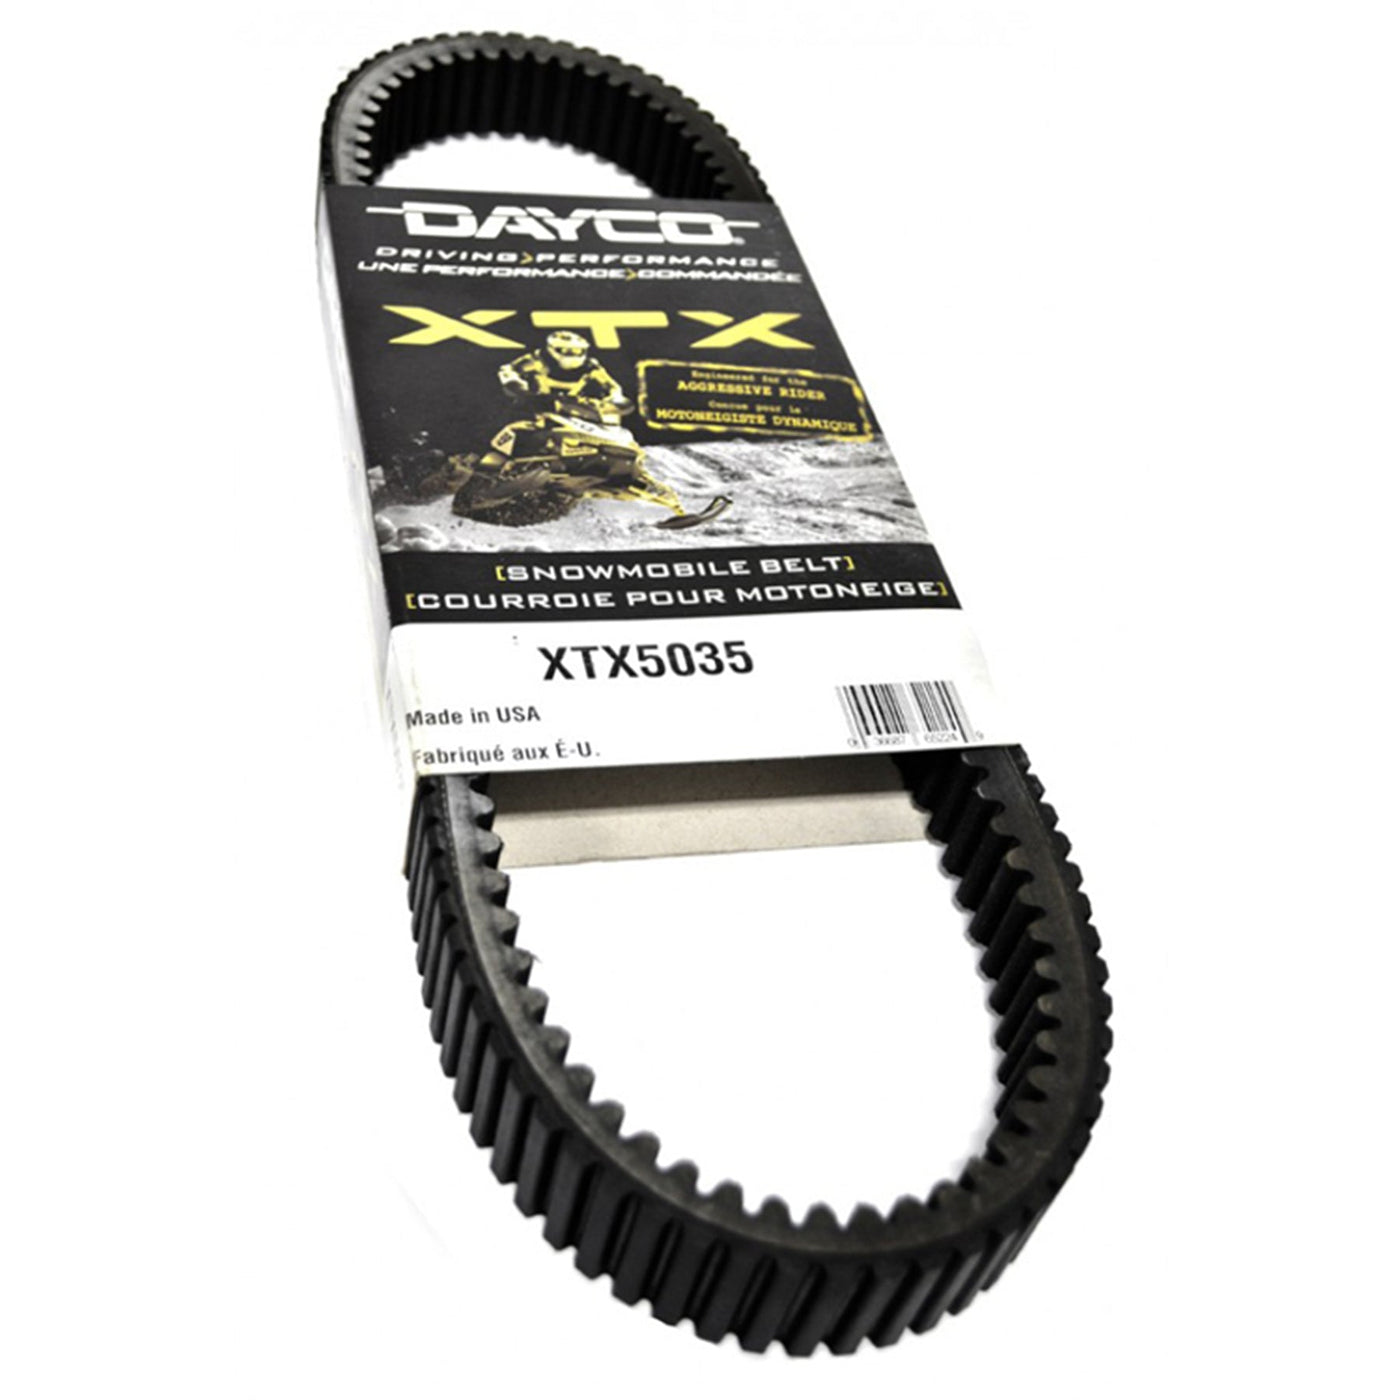 Dayco XTX5045 Xtx Drive Snowmobile Belt #XTX5045